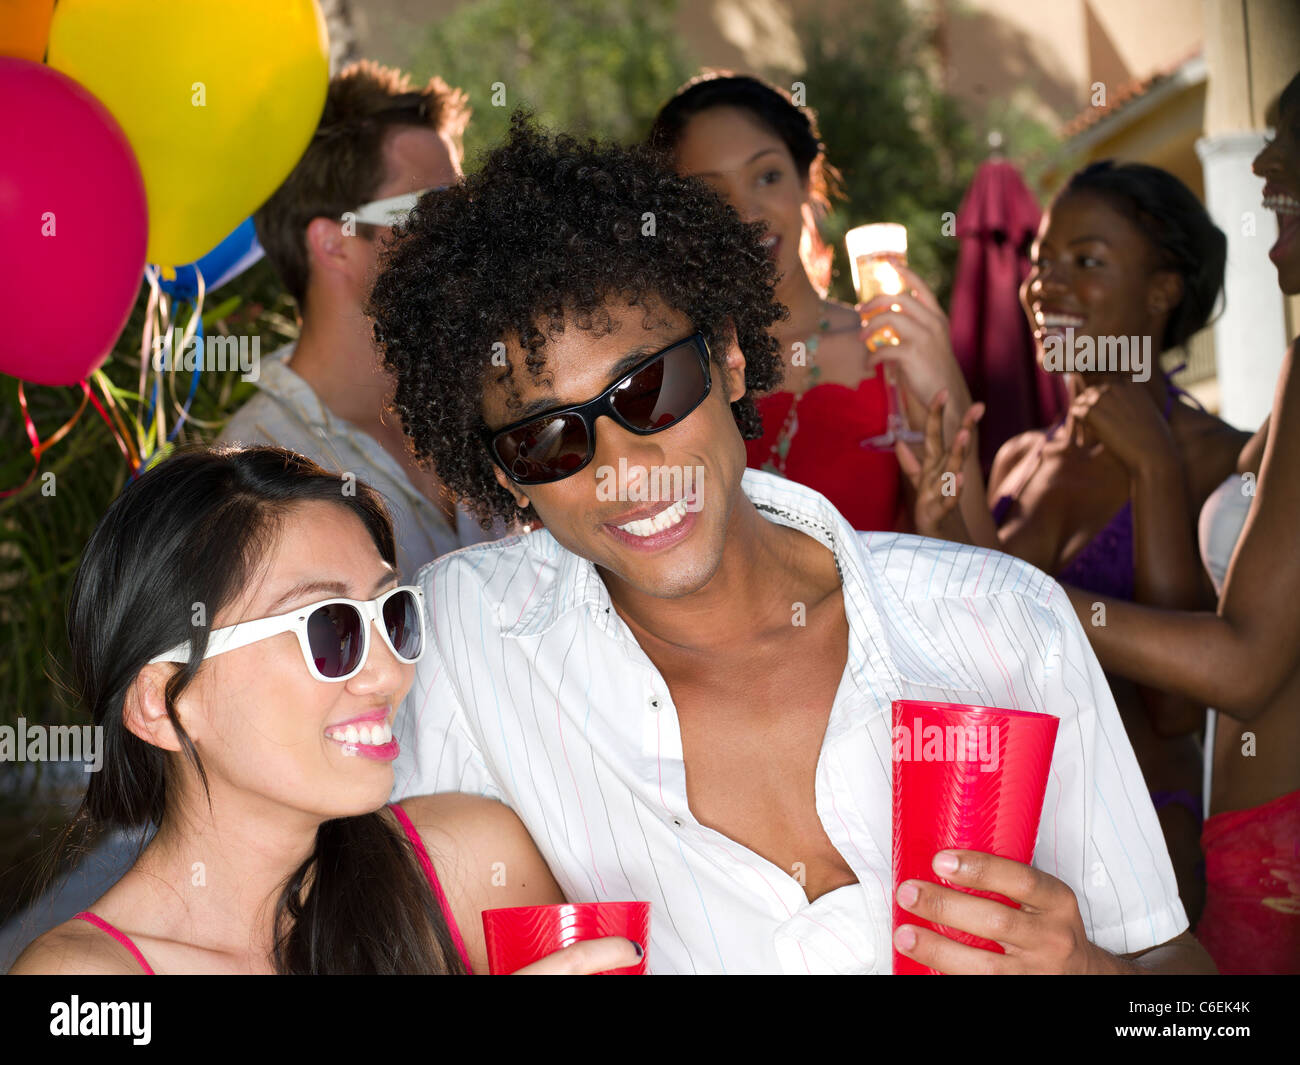 Scottsdale, Arizona, EE.UU., los jóvenes se diviertan en parte Foto de stock